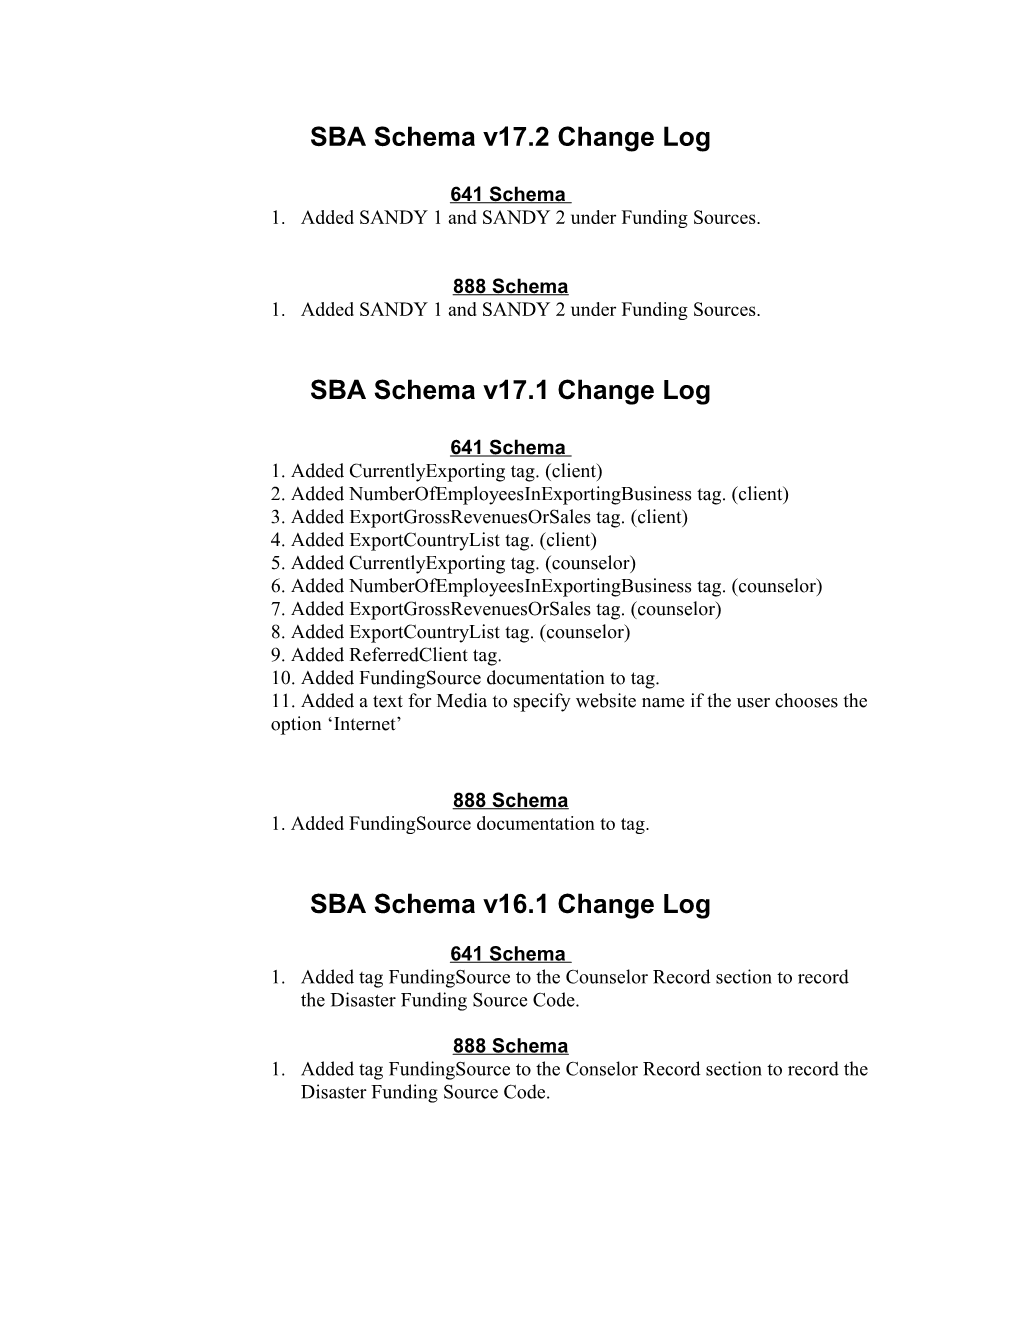 SBA Schema V17.2 Change Log